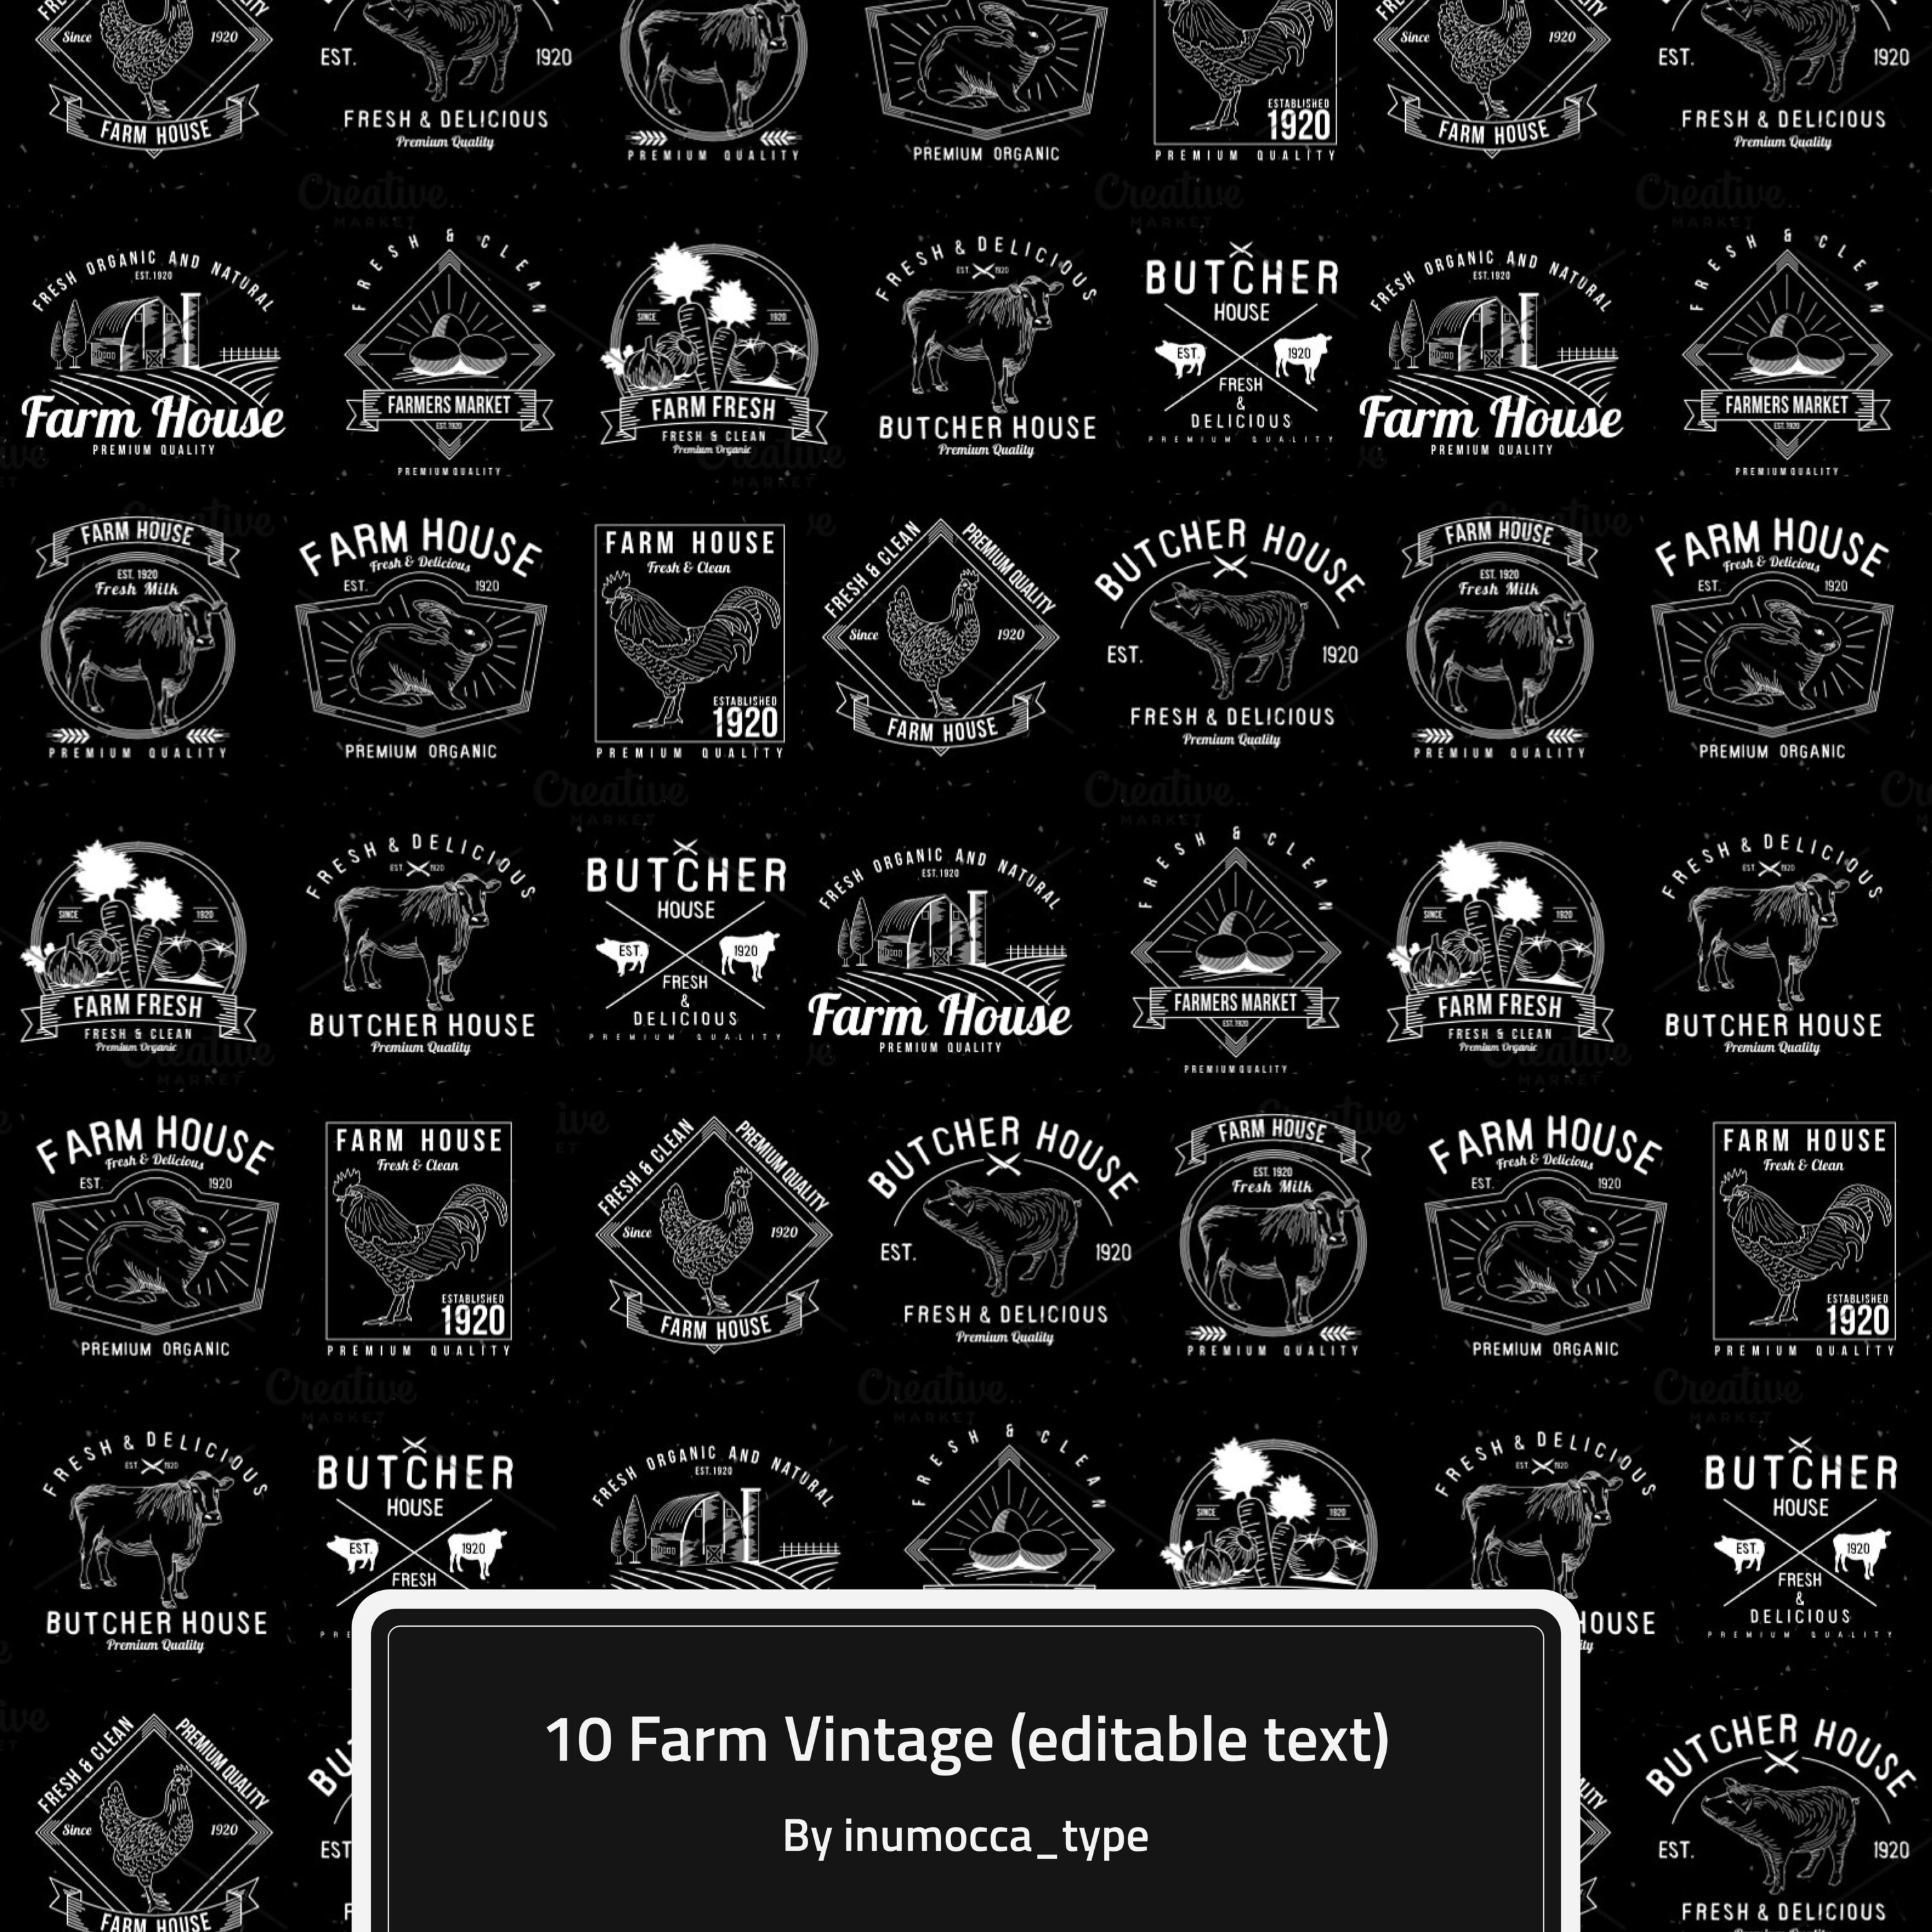 10 Farm Vintage (editable text) cover.